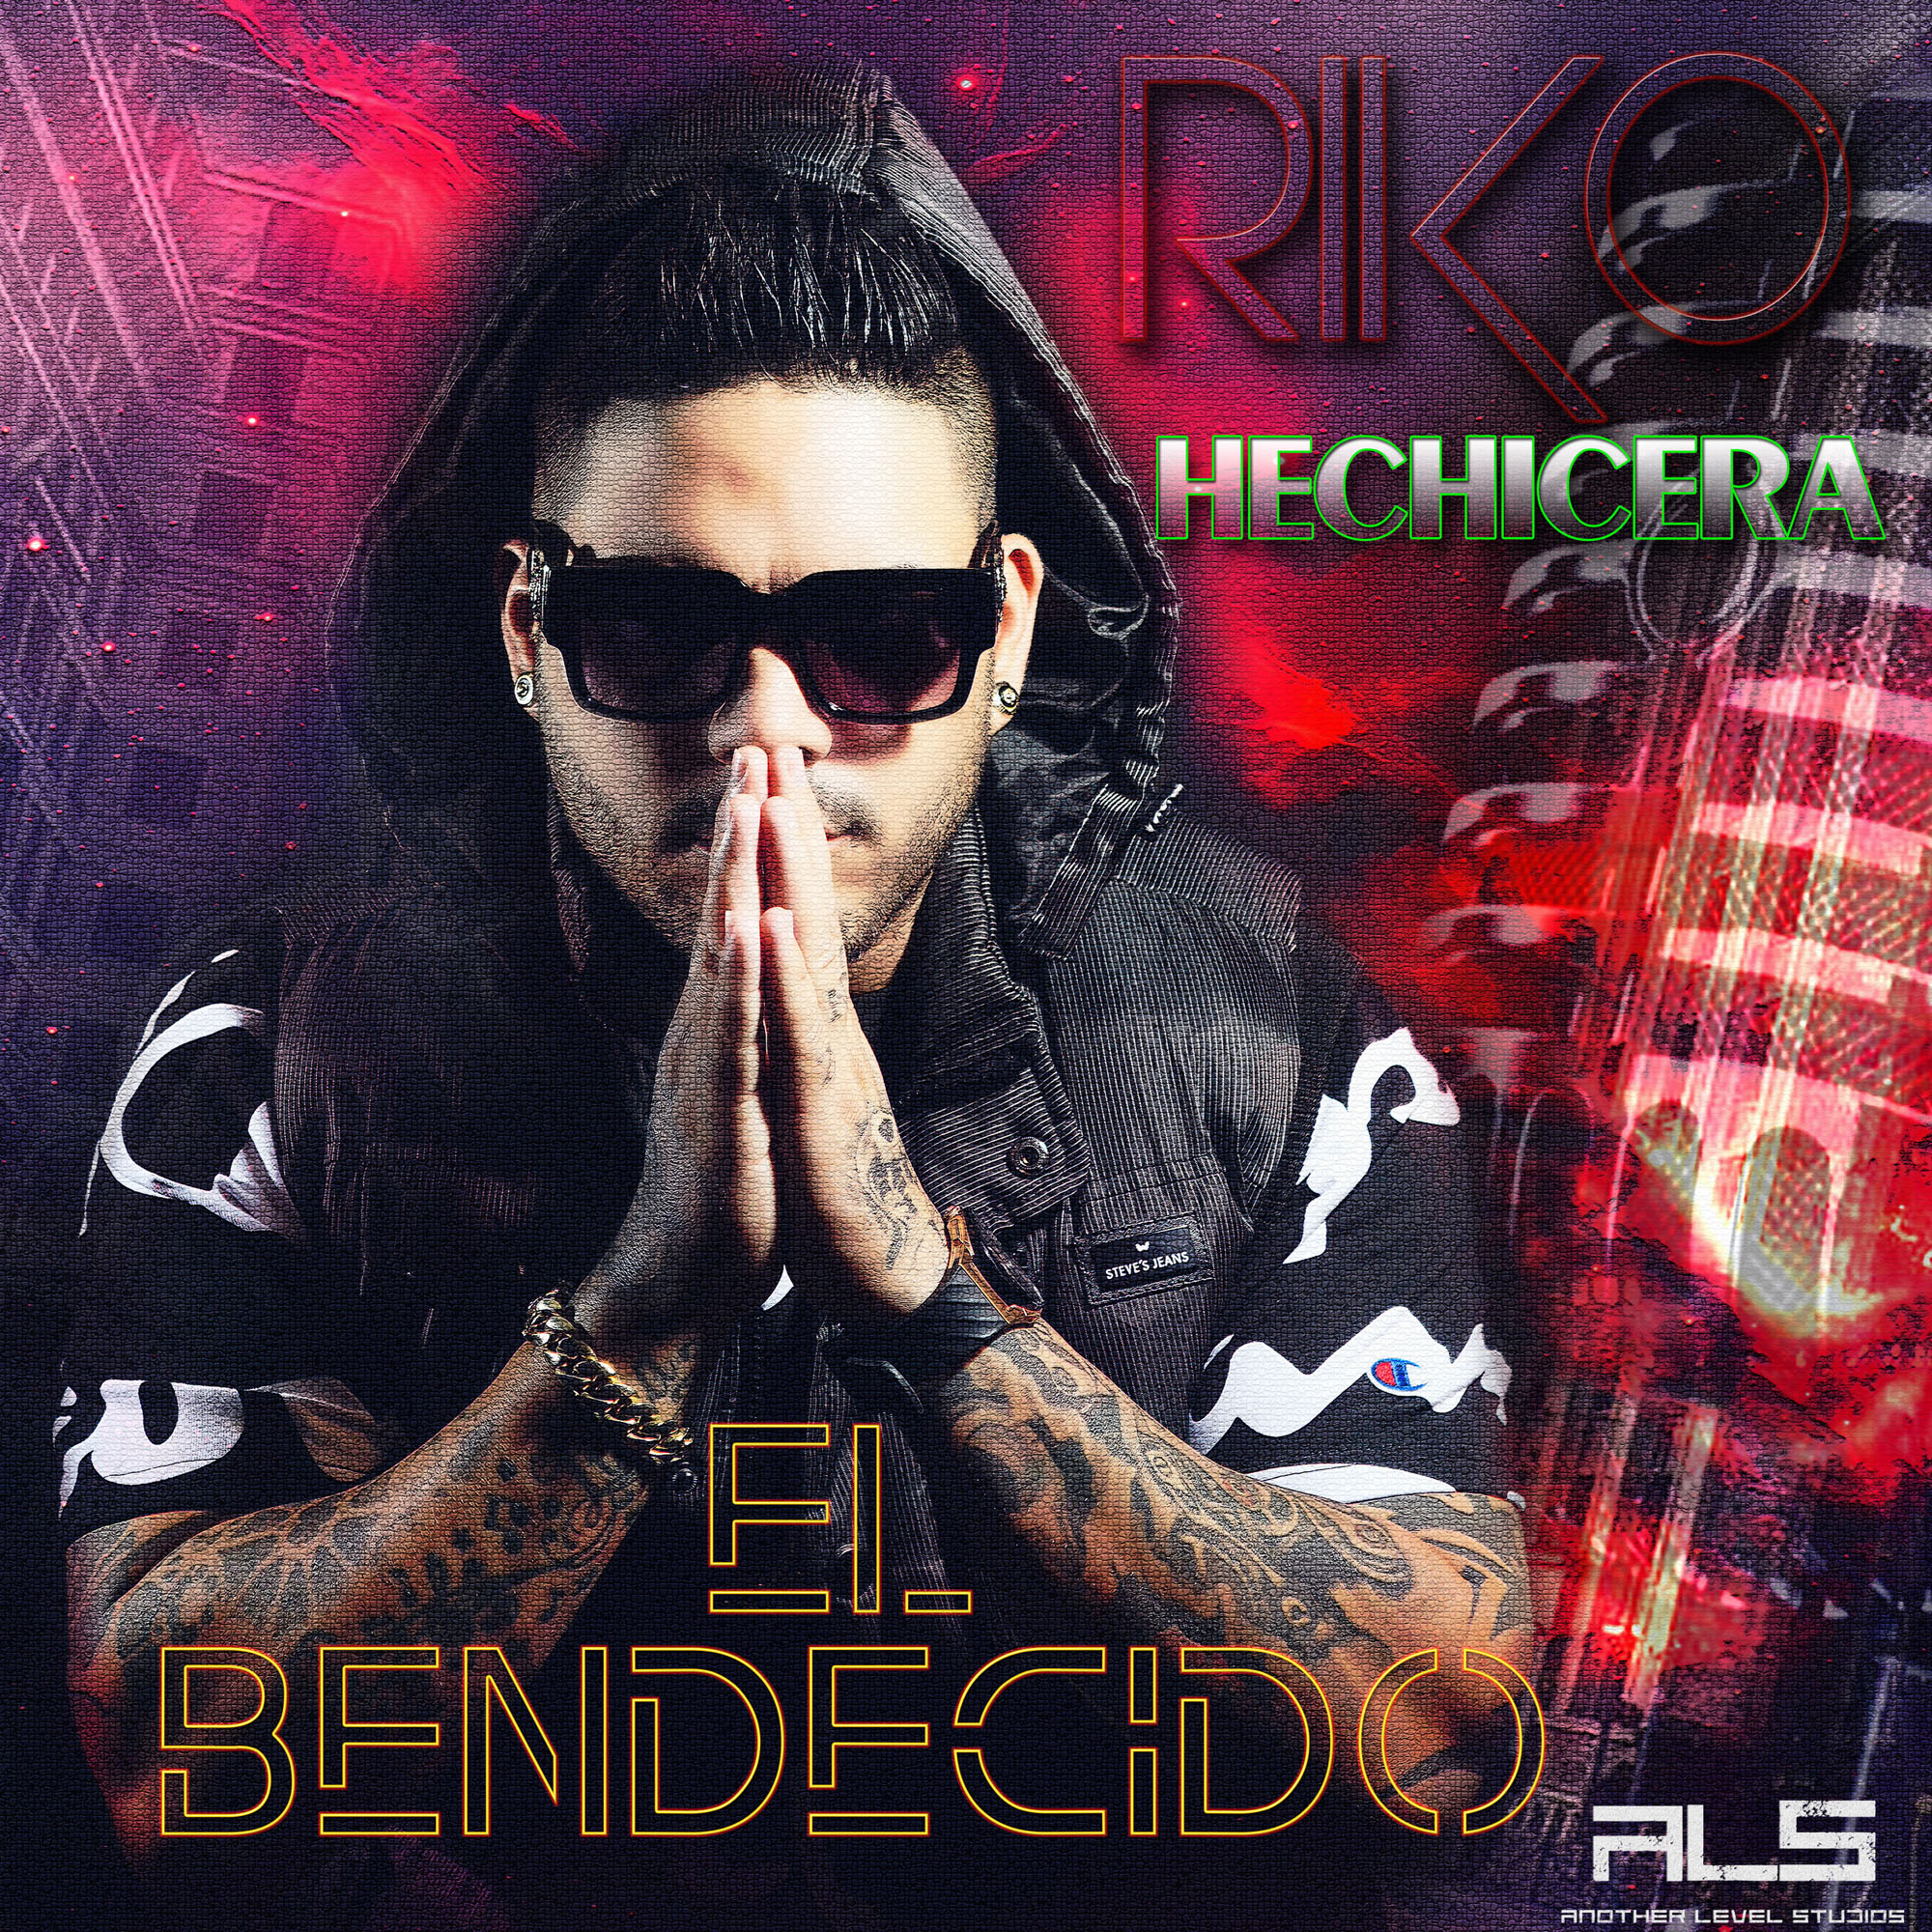 El cantante urbano conocido como Riko El Bendecido estrena su tema” Hechicera” bajo el Sello Another Level Studios.